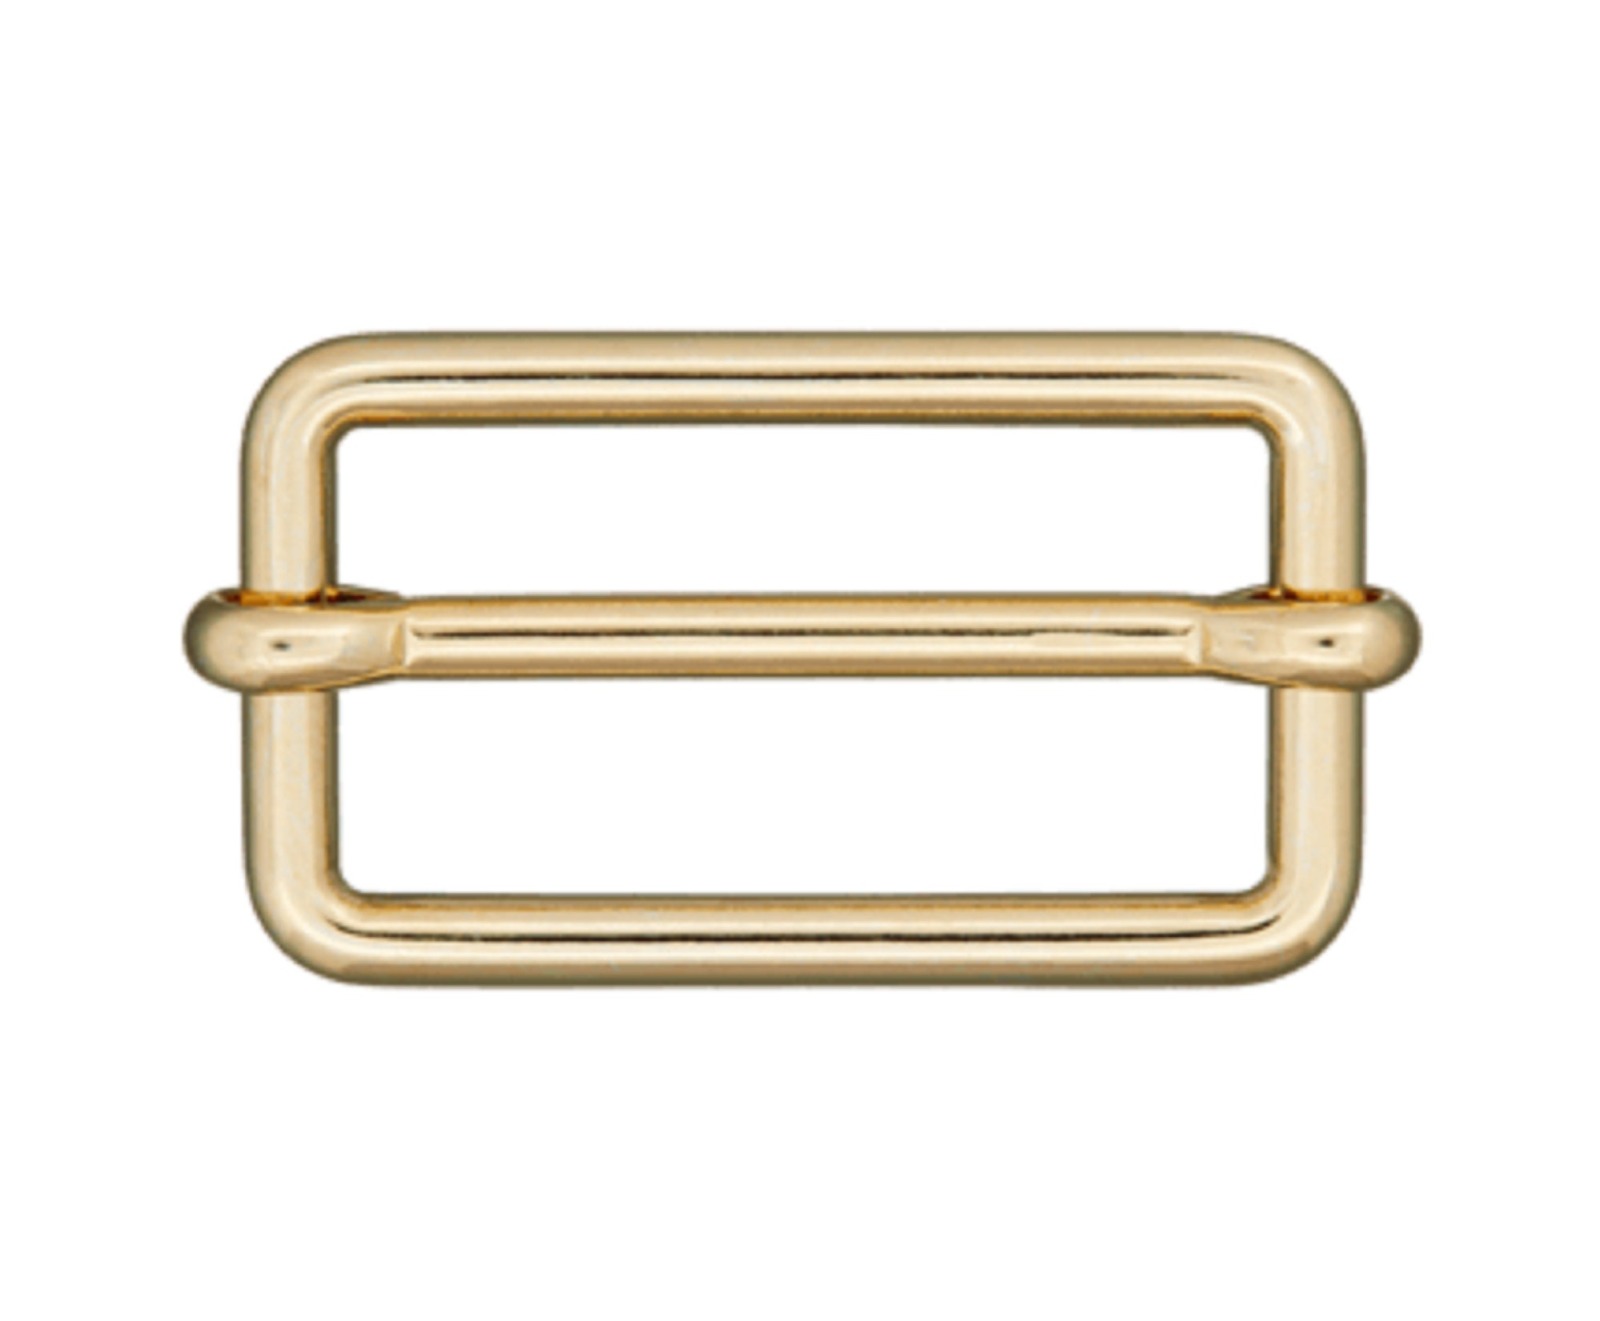 Leiterschnalle / Versteller gold 30 mm